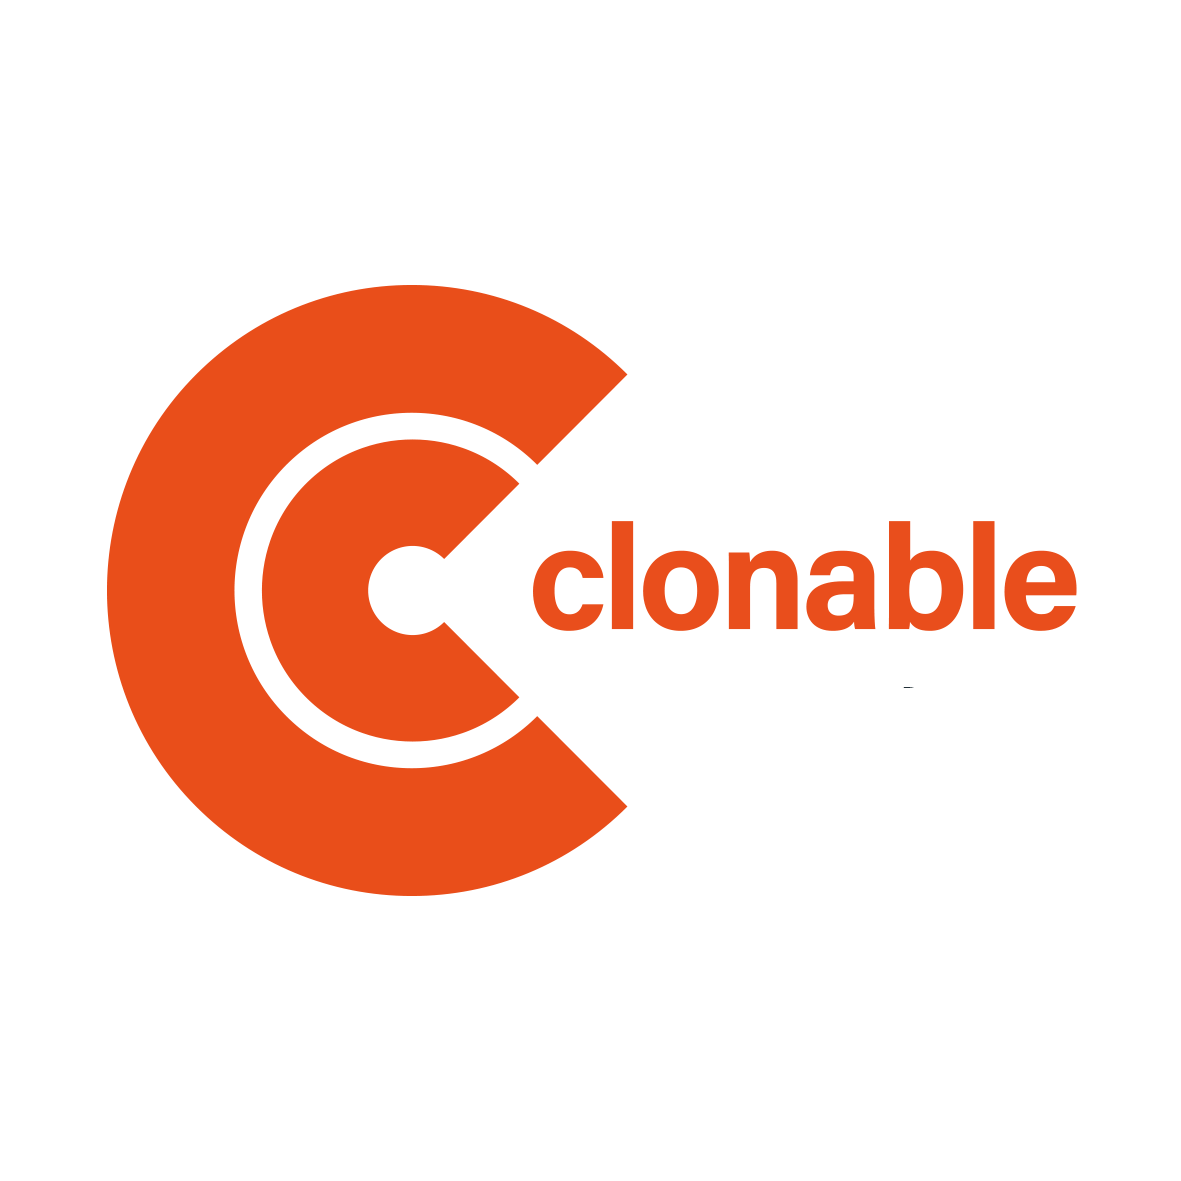 Clonable logo lichte achtergrond